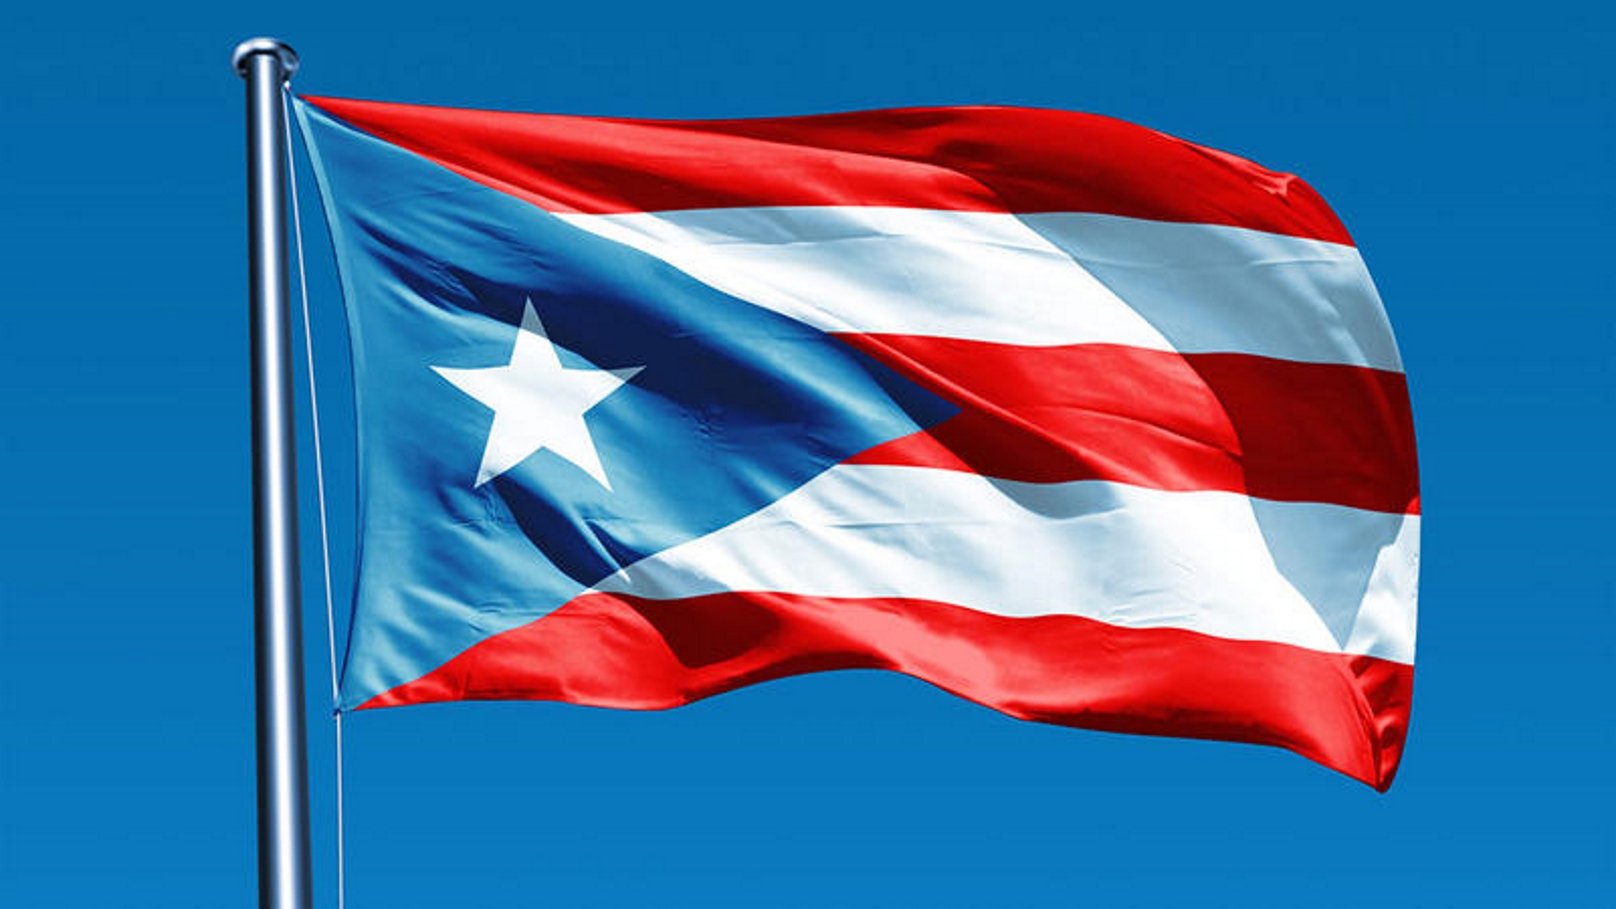 Els Estats Units permeten un referèndum a Puerto Rico per decidir el seu futur